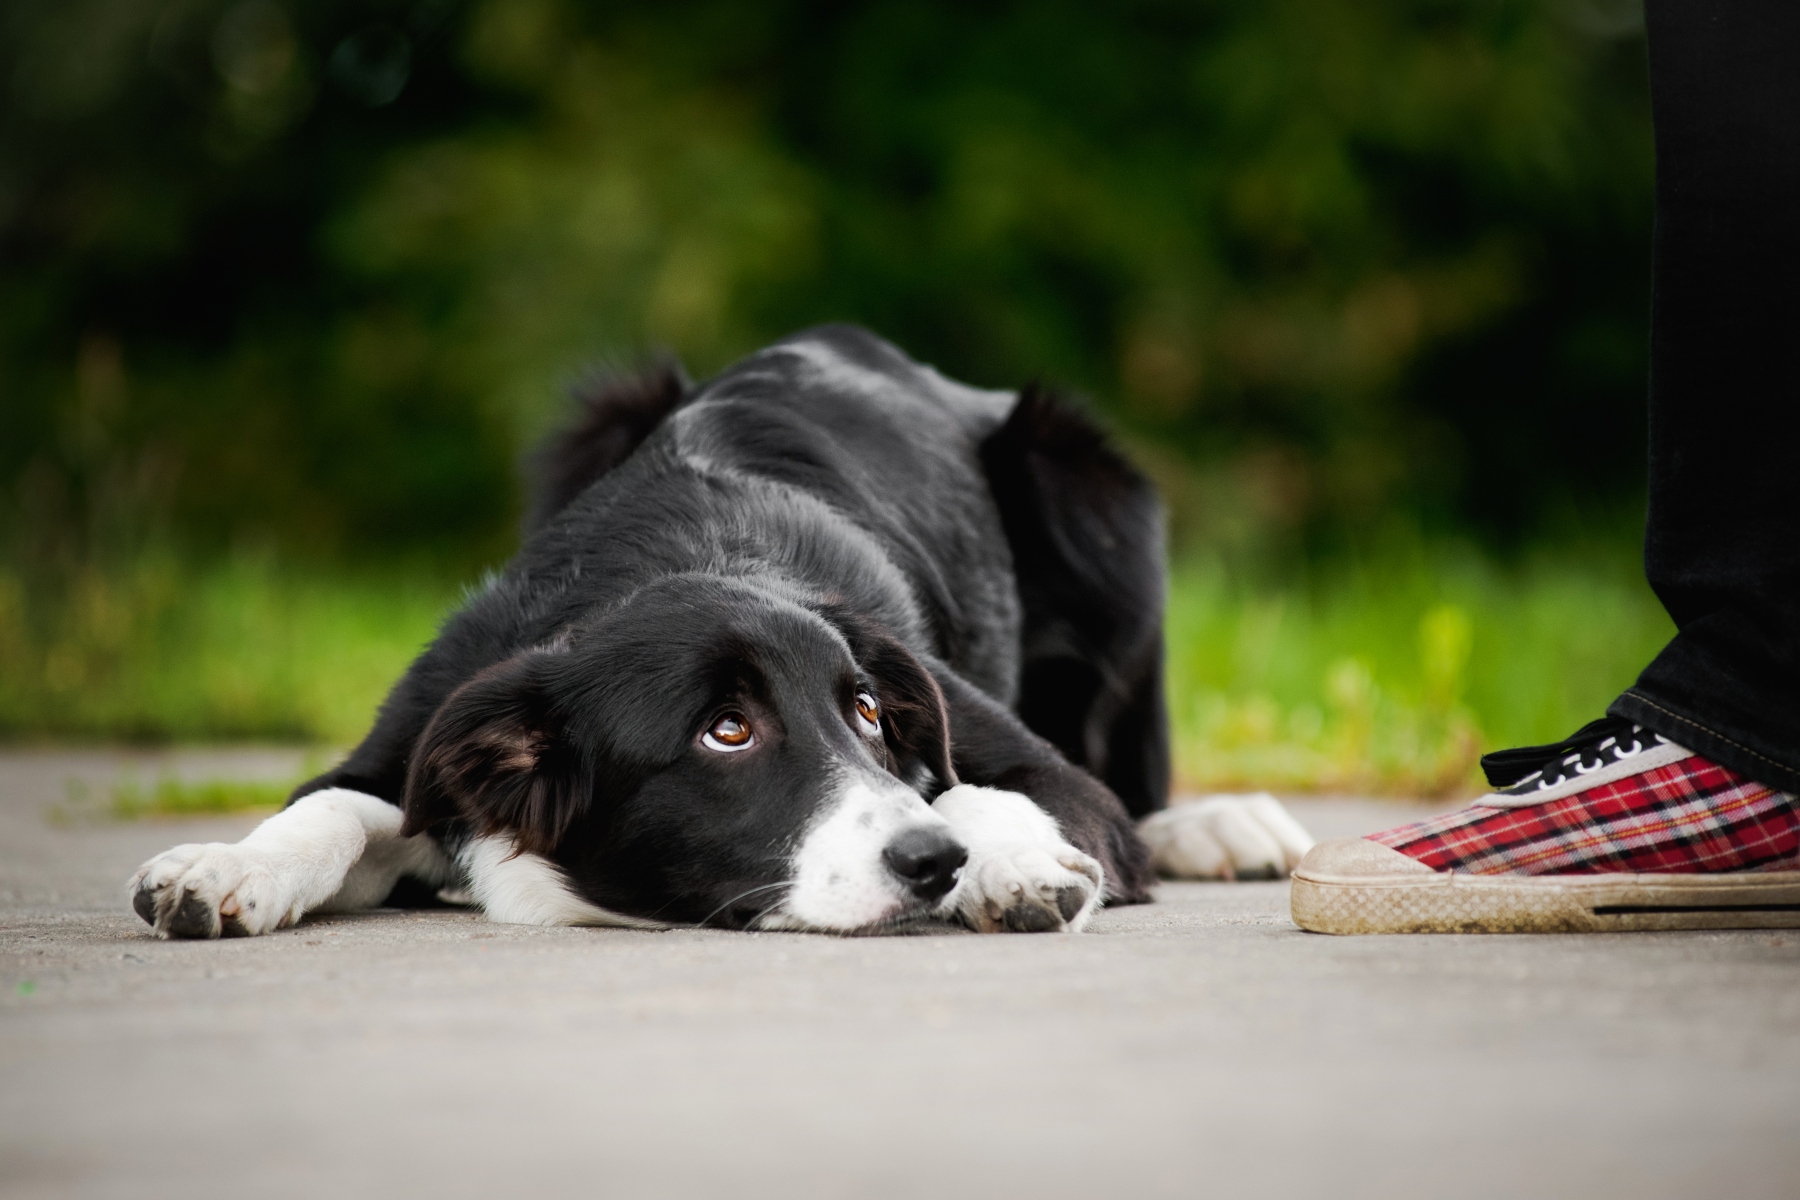 Αμφιβληστροειδής: Γιατί οι άνθρωποι βλέπουν χρώματα που οι σκύλοι δεν μπορούν;